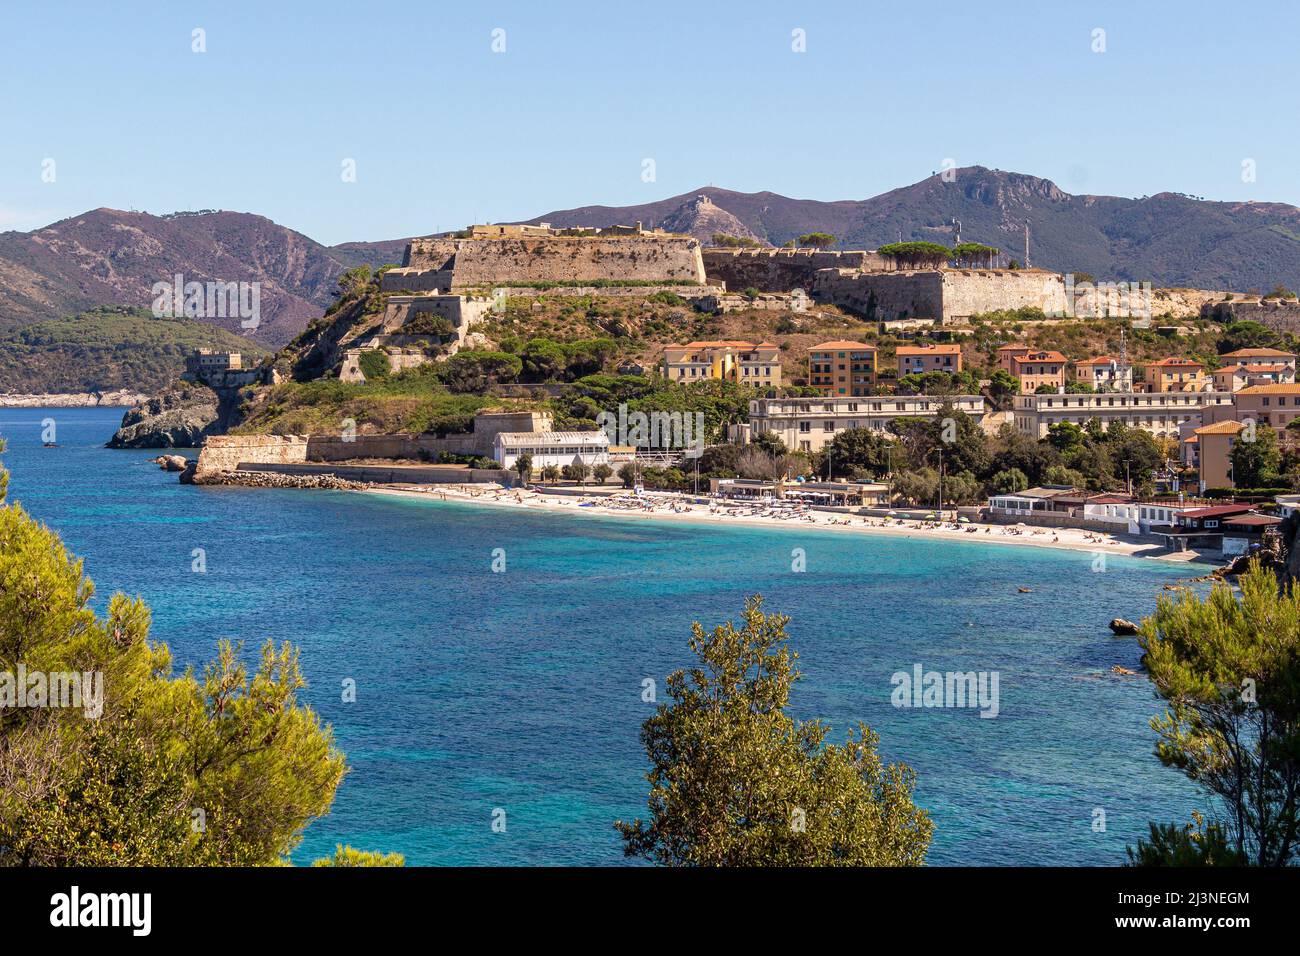 Vista sulla famosa spiaggia le Ghiaie, una piccola spiaggia libera vicino a Forte Falcone Portoferraio, Isola d'Elba, Italia Foto Stock